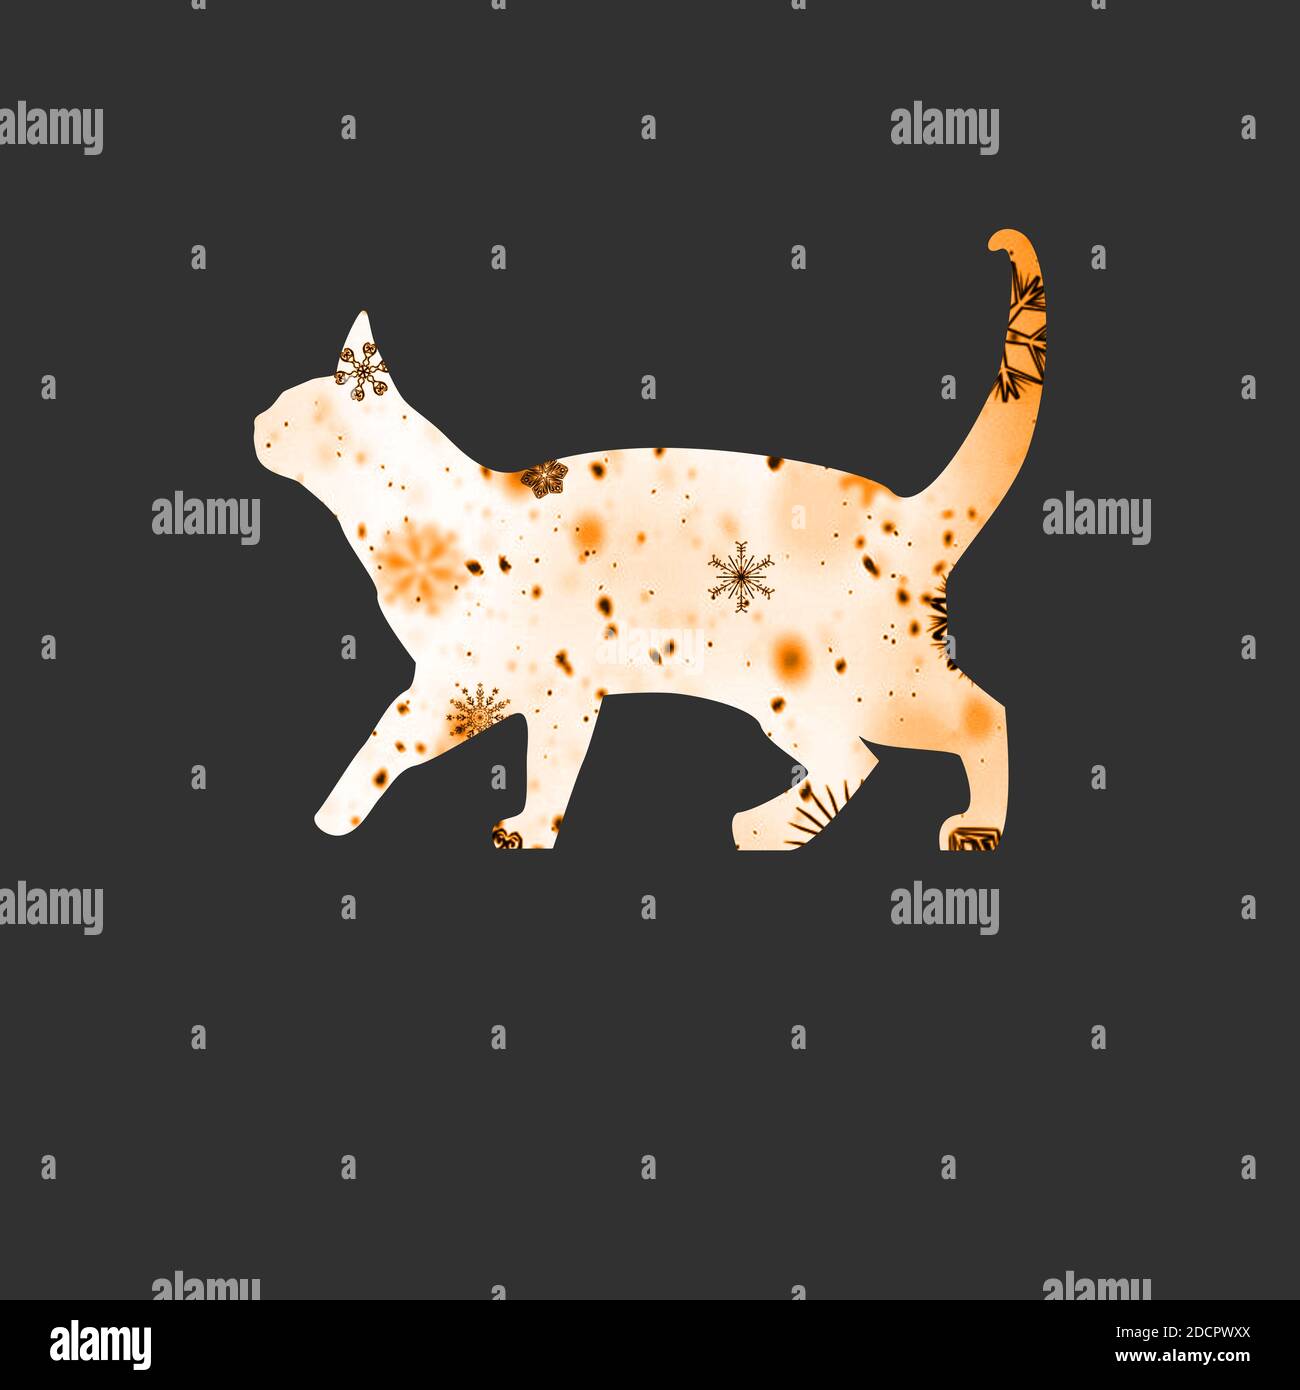 Adorable chat de marche d'hiver, blanc et orange sur fond noir. Illustration de chat heureux automne. Banque D'Images